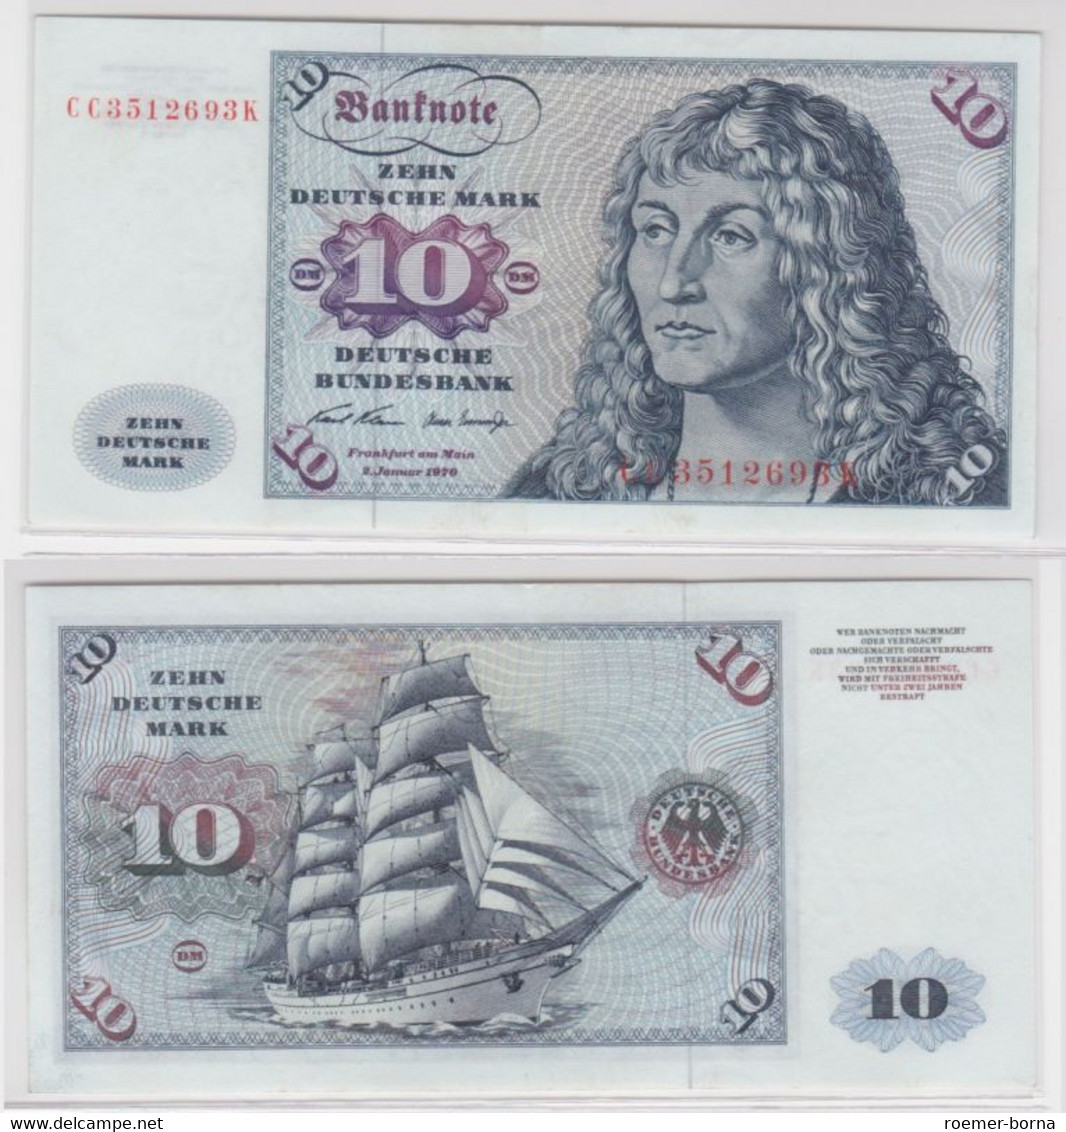 T144740 Banknote 10 DM Deutsche Mark Ro. 270a Schein 2.Jan. 1970 KN CC 3512693 K - 10 Deutsche Mark